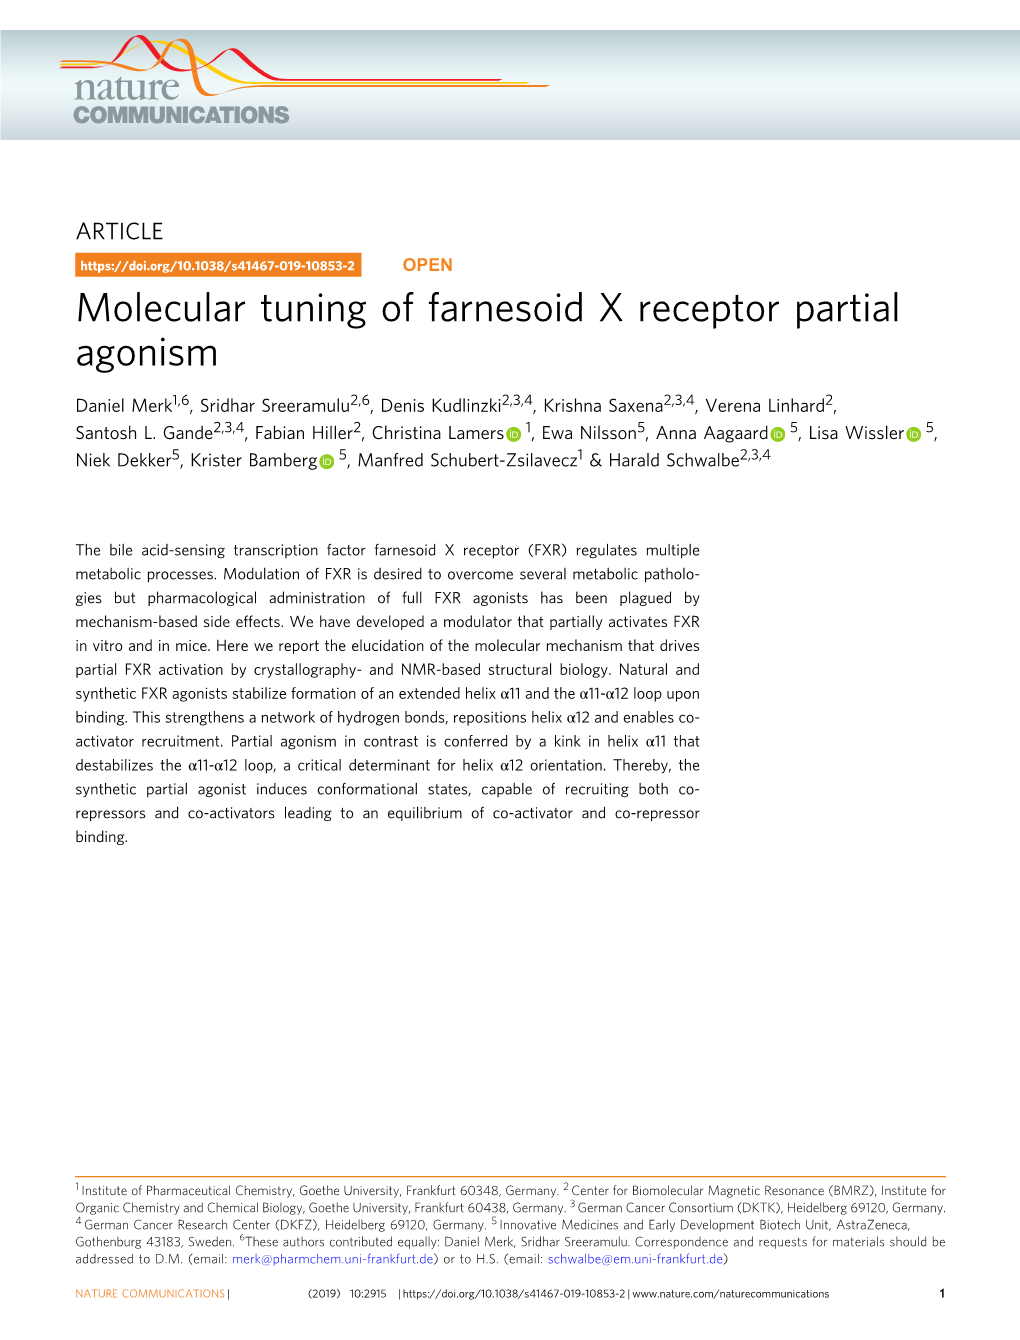 Molecular Tuning of Farnesoid X Receptor Partial Agonism